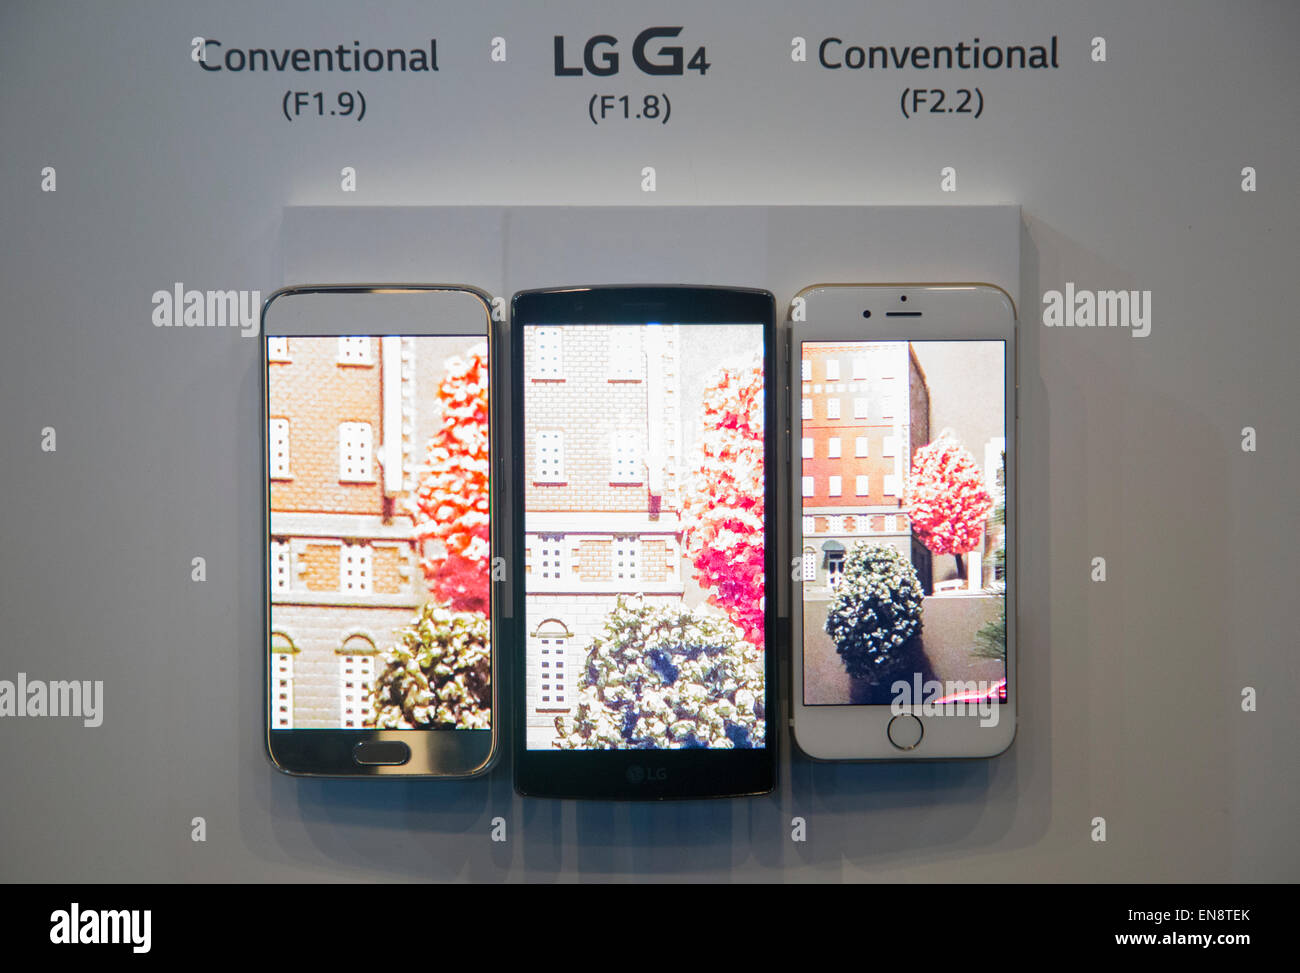 Séoul, Corée du Sud. 29 avril, 2015. LG Electronics G4 smartphone (C), le Samsung Galaxy S6 (L) et l'iPhone d'Apple 6 sont affichées pendant une vitrine de LG G4 à Séoul, Corée du Sud. LG a présenté son nouveau G4 le mercredi, c'est équipé de 5,5 pouces IPS (in-plane switching) QHD écran, un processeur Qualcomm Snapdragon 808 avec X10 et une F LTE 1.8 Objectif de l'appareil. Le nouveau smartphone fonctionne sur Google Android 5.1 Lollipop et ses prix local est d'environ 770 $US, selon les médias locaux. Credit : Lee Jae-Won/AFLO/Alamy Live News Banque D'Images